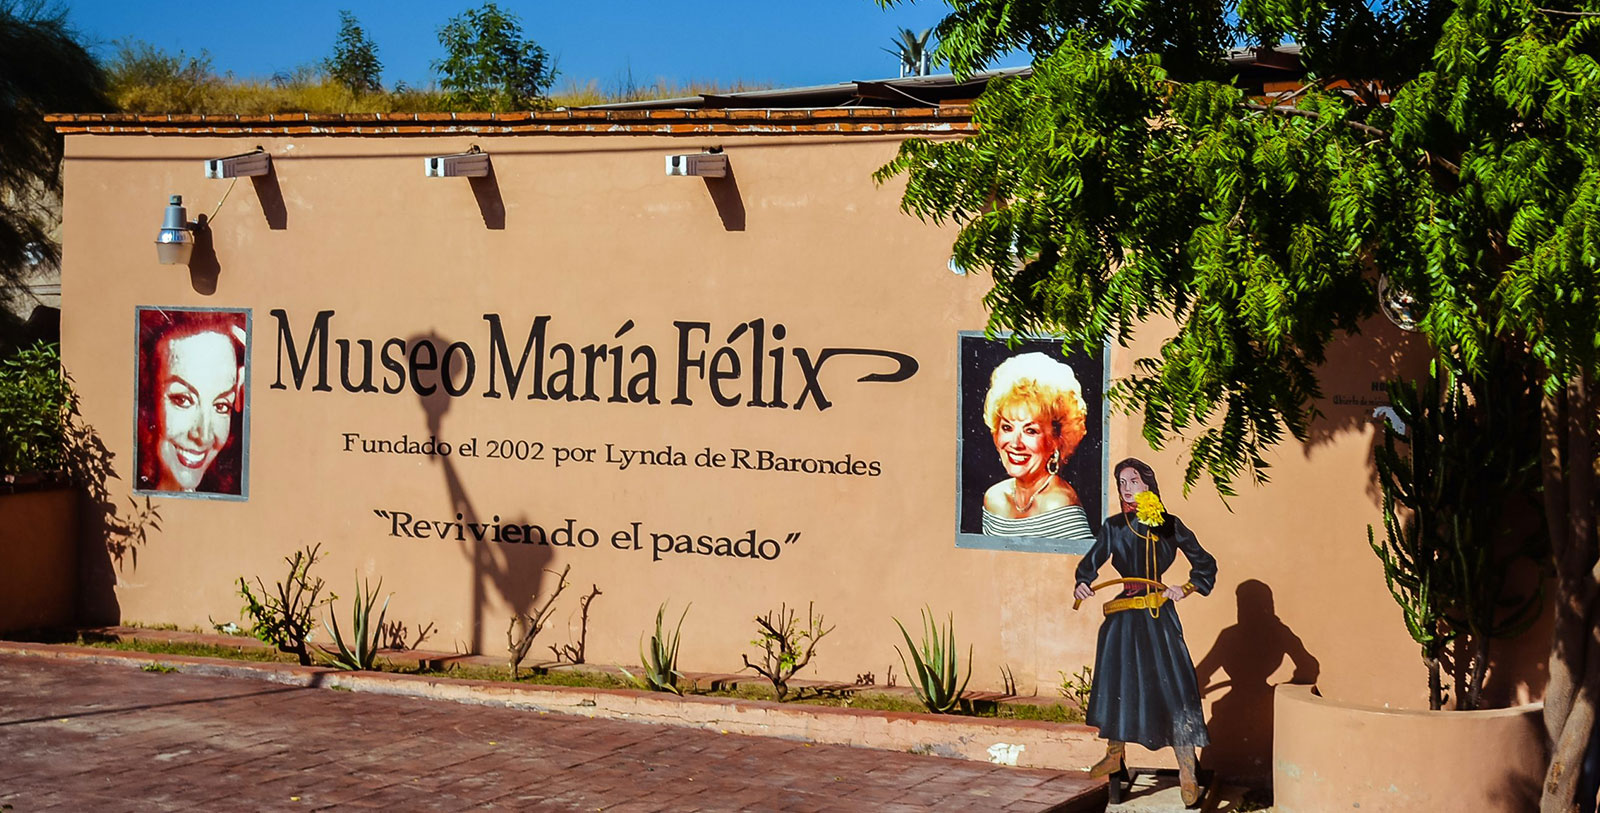 Explore the Casa Museo María Félix.